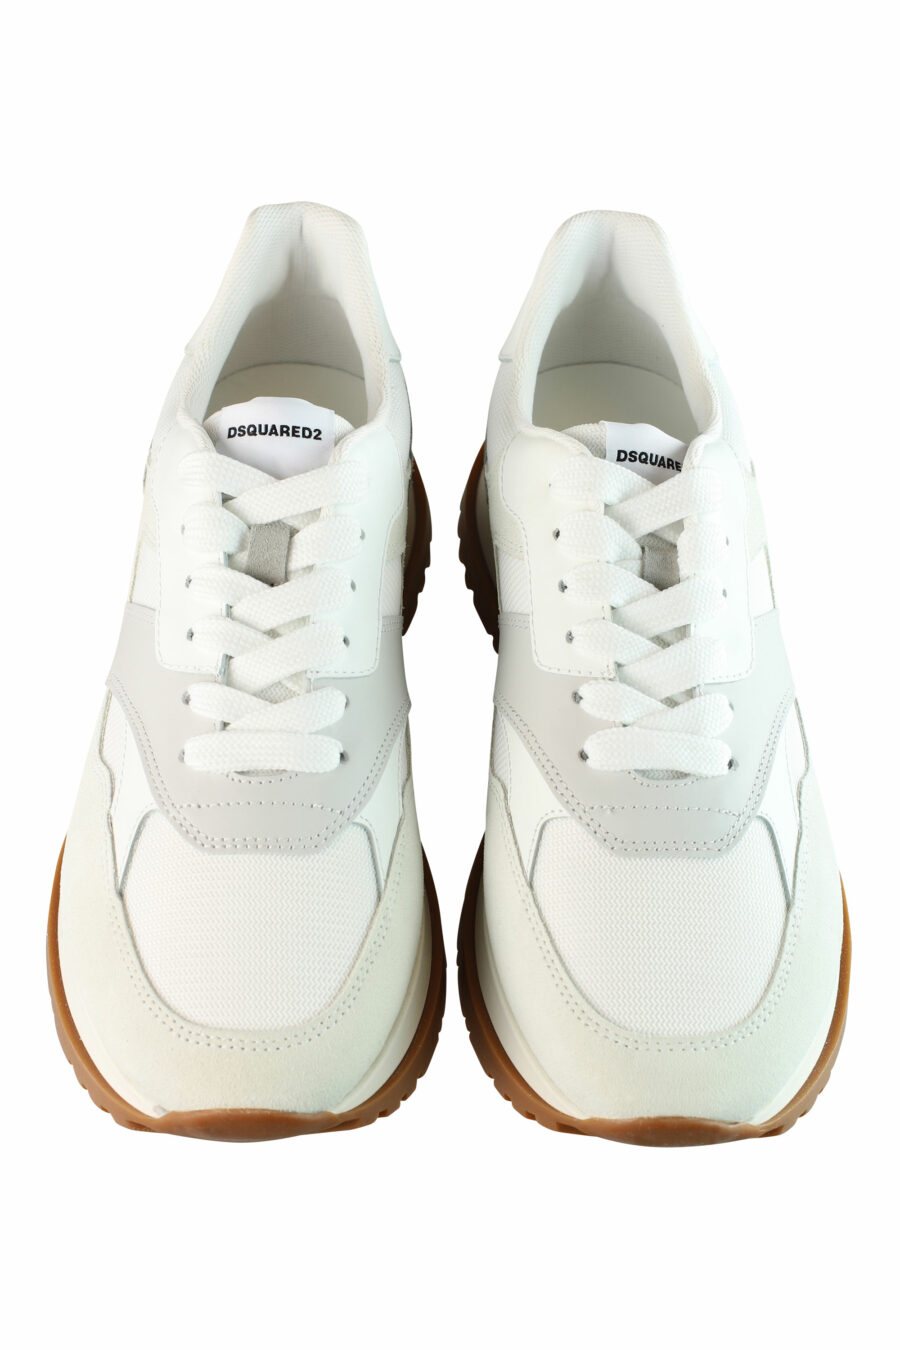 Zapatillas blancas "running" con detalles grises y beige - IMG 1364